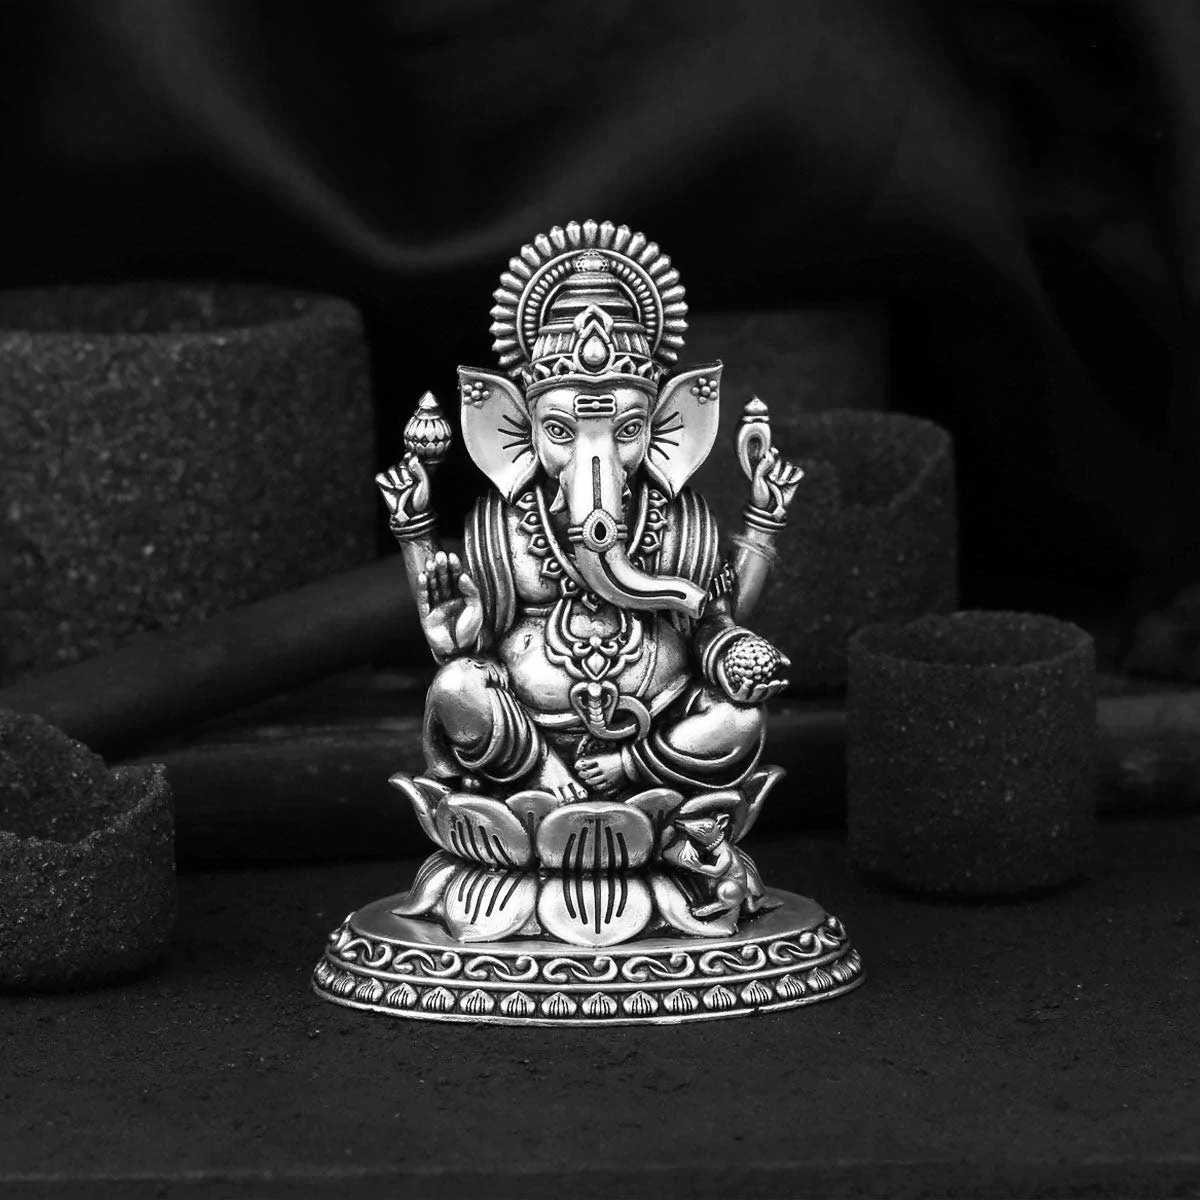 Ganpati idol for home decoration, elegant design, silver plated idol